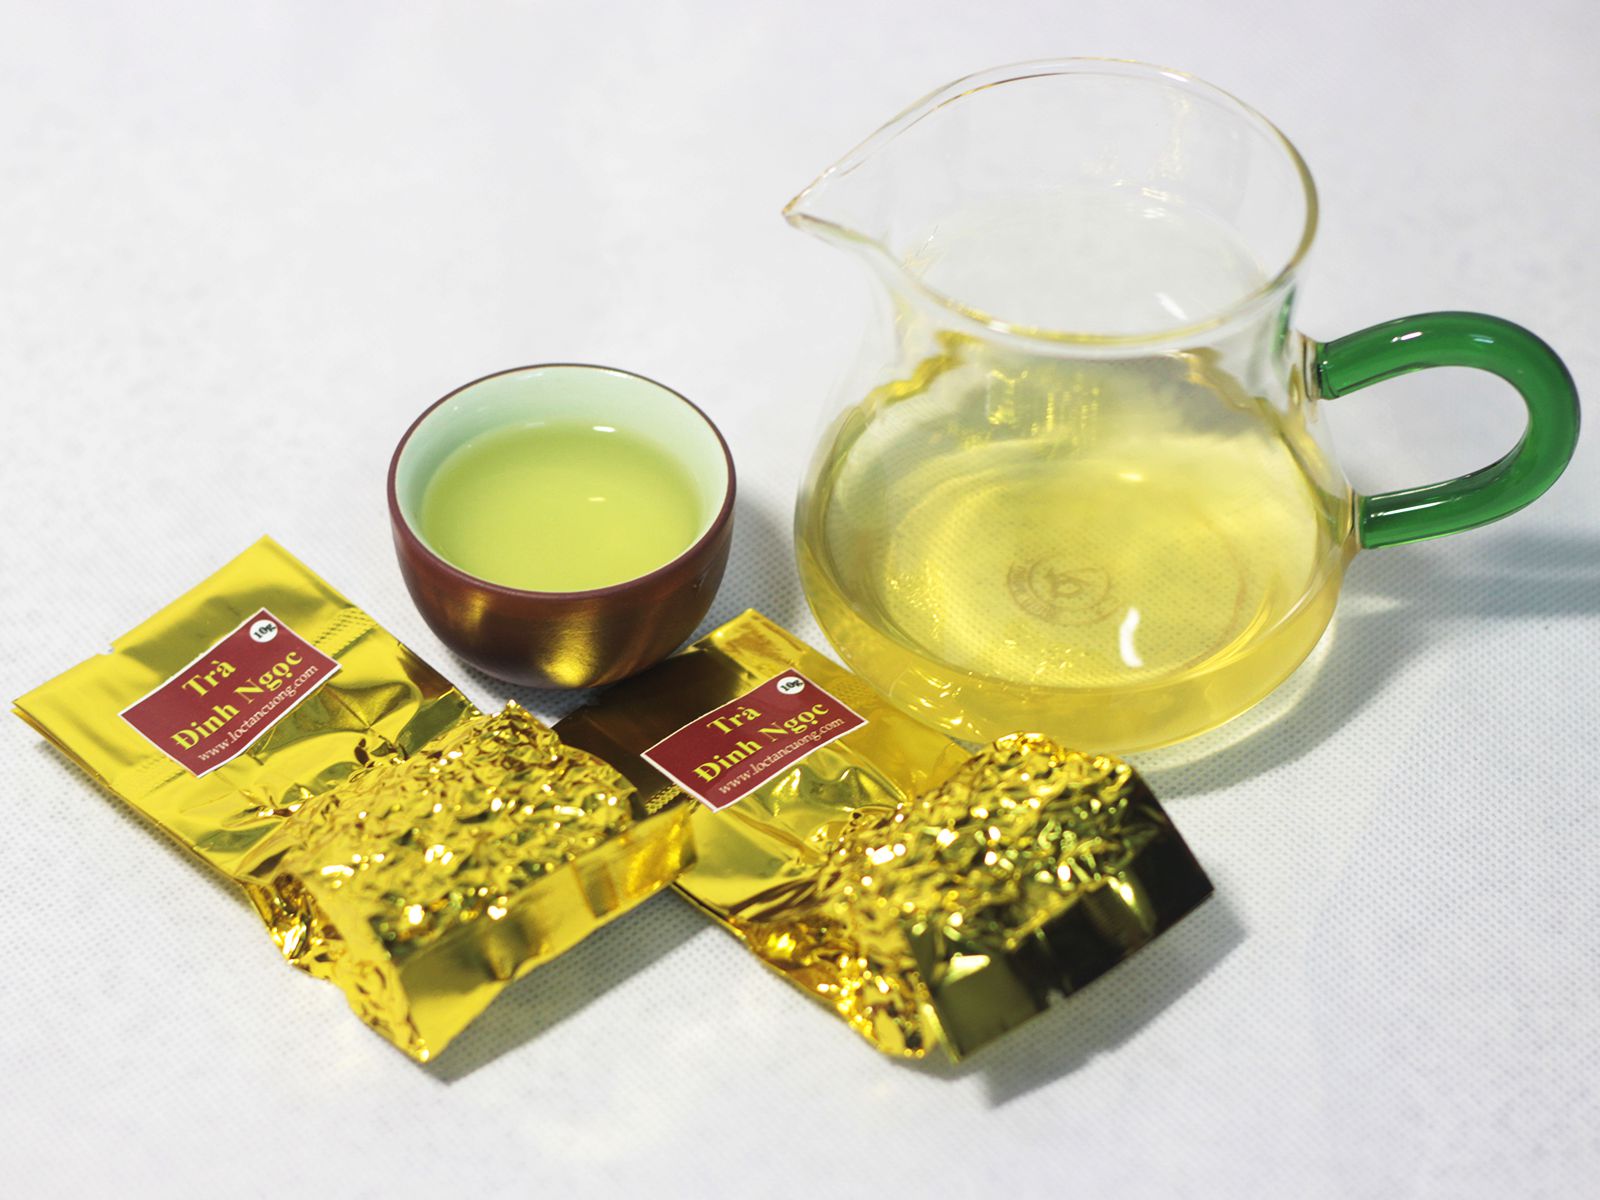 Trà đinh ngọc Thái Nguyên sau khi pha sẽ cho màu nước vàng xanh đặc trưng cho dòng trà Thái Nguyên, hương cốm non rõ rệt cùng vị chát rất dịu, hậu ngọt rất sâu